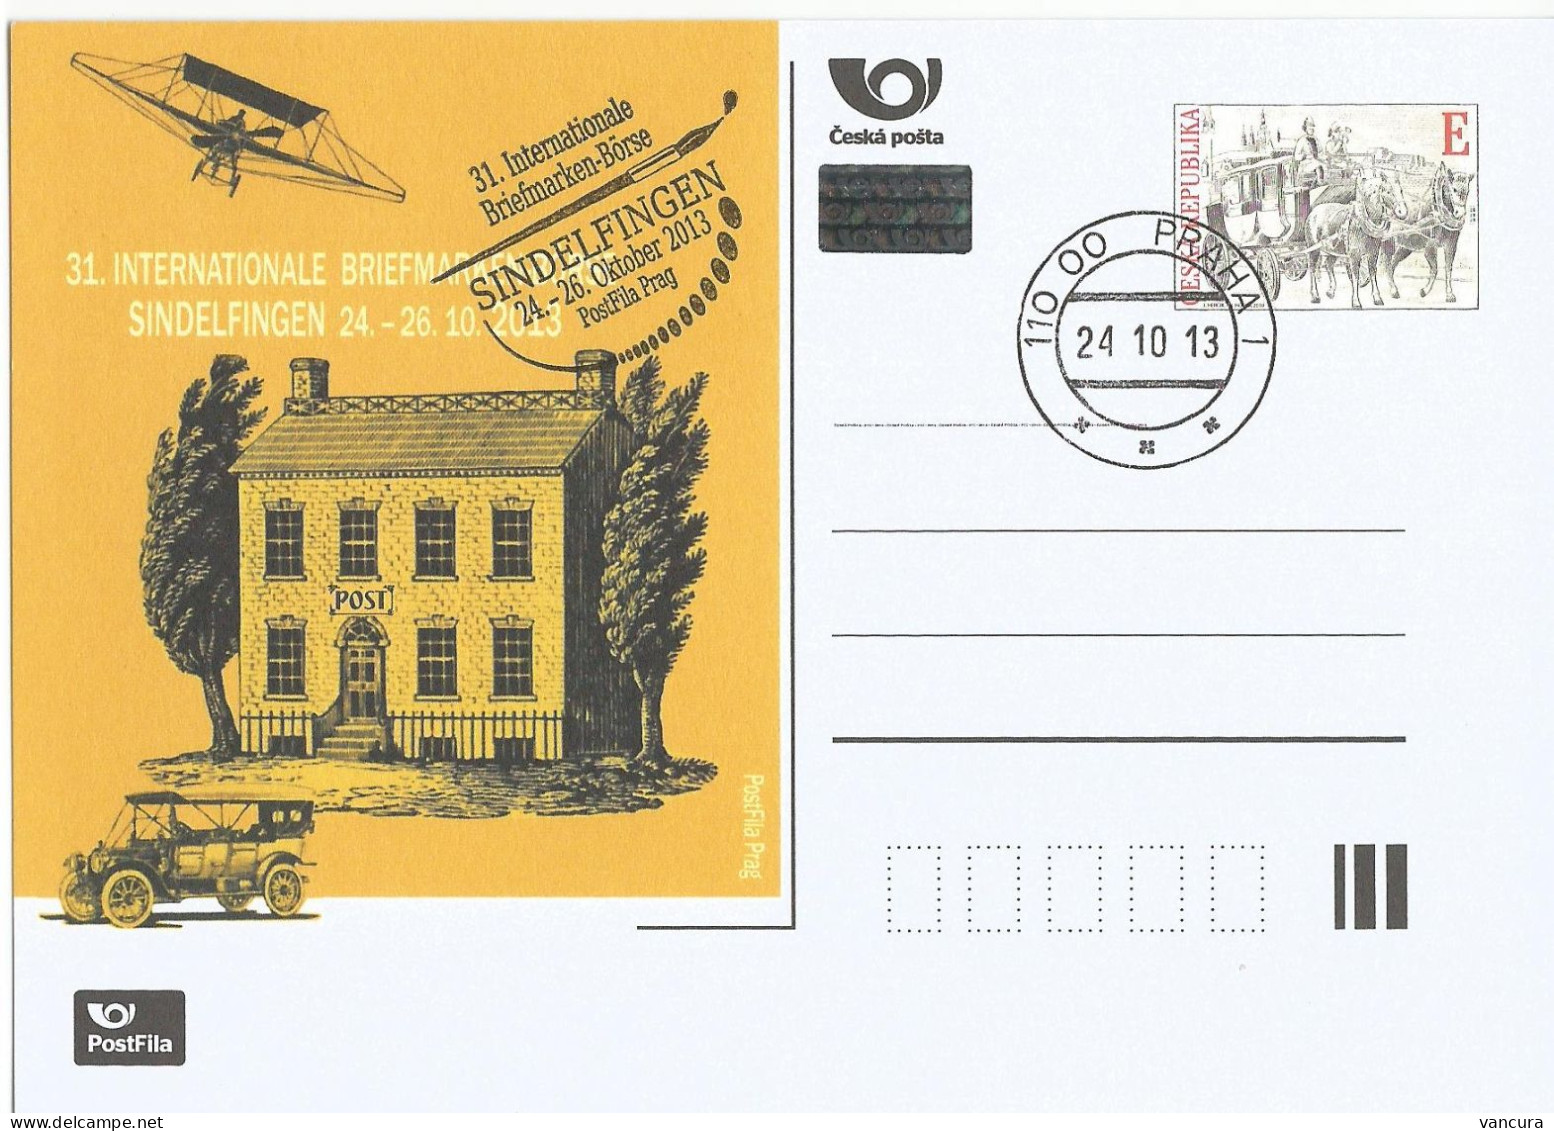 CDV A 200 Czech Republic Sindelfingen Stamp Exhibition 2013 - Ansichtskarten